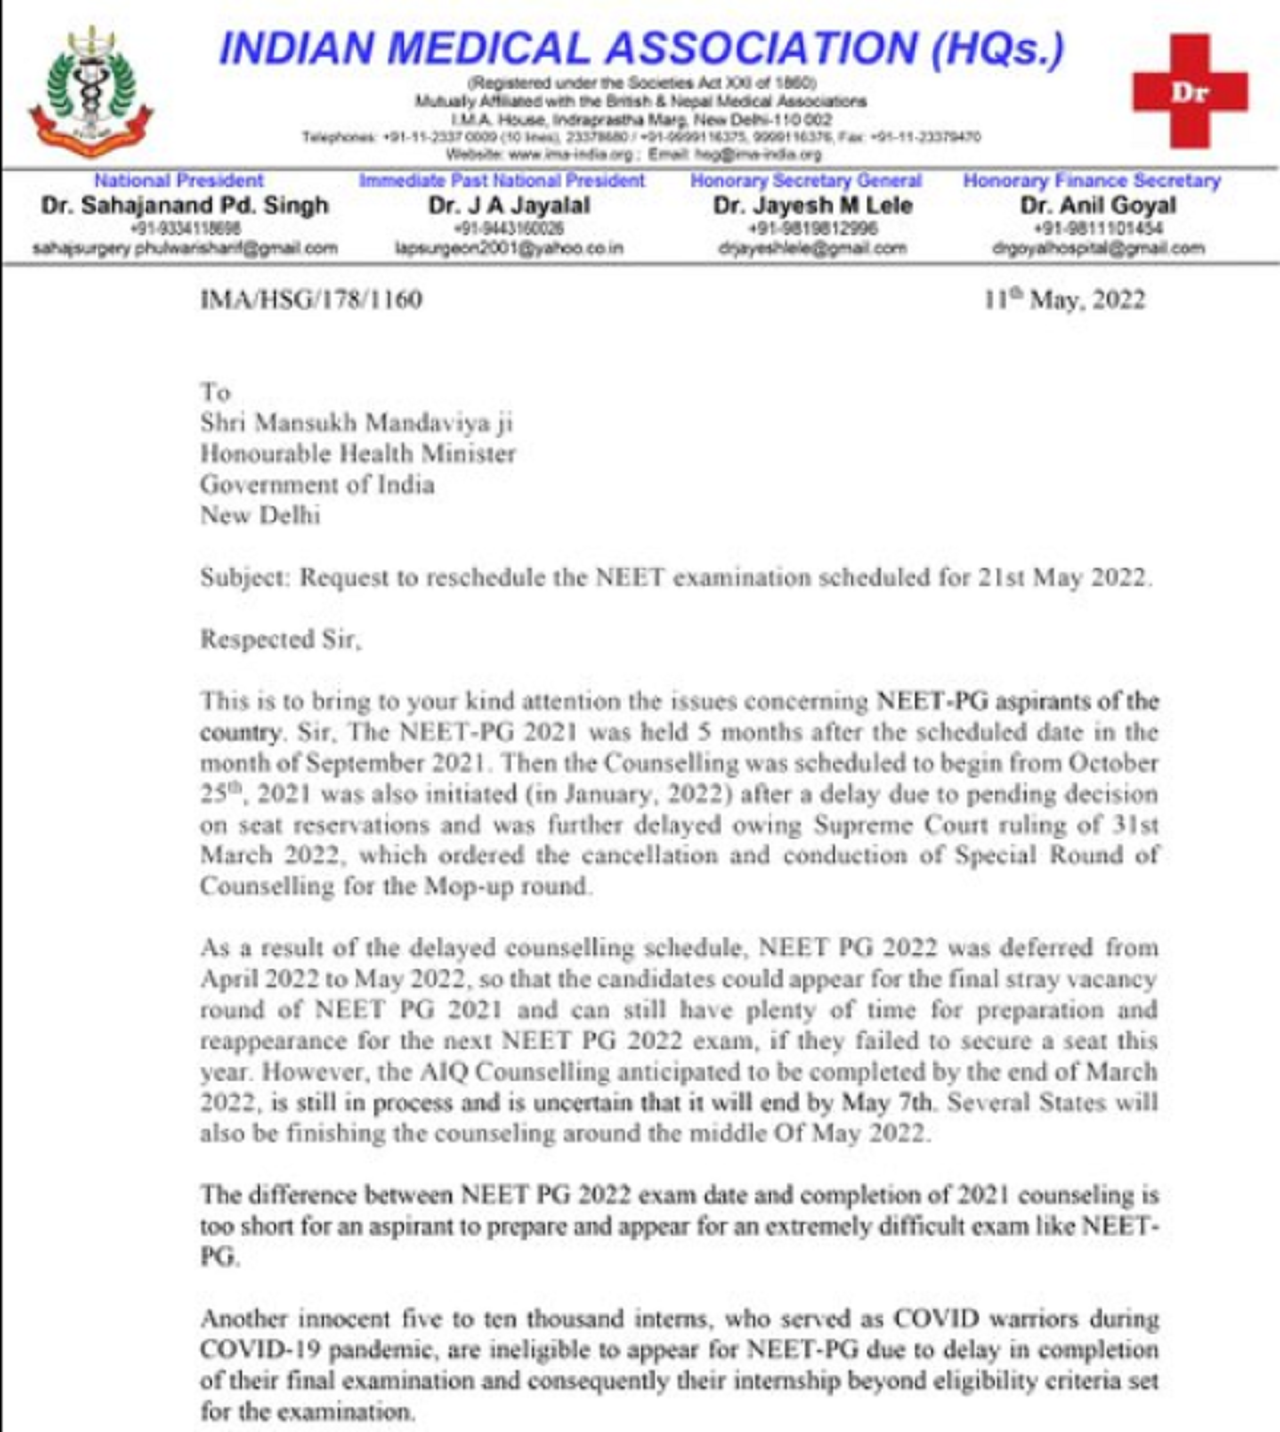 IMA letter to postpone NEET PG